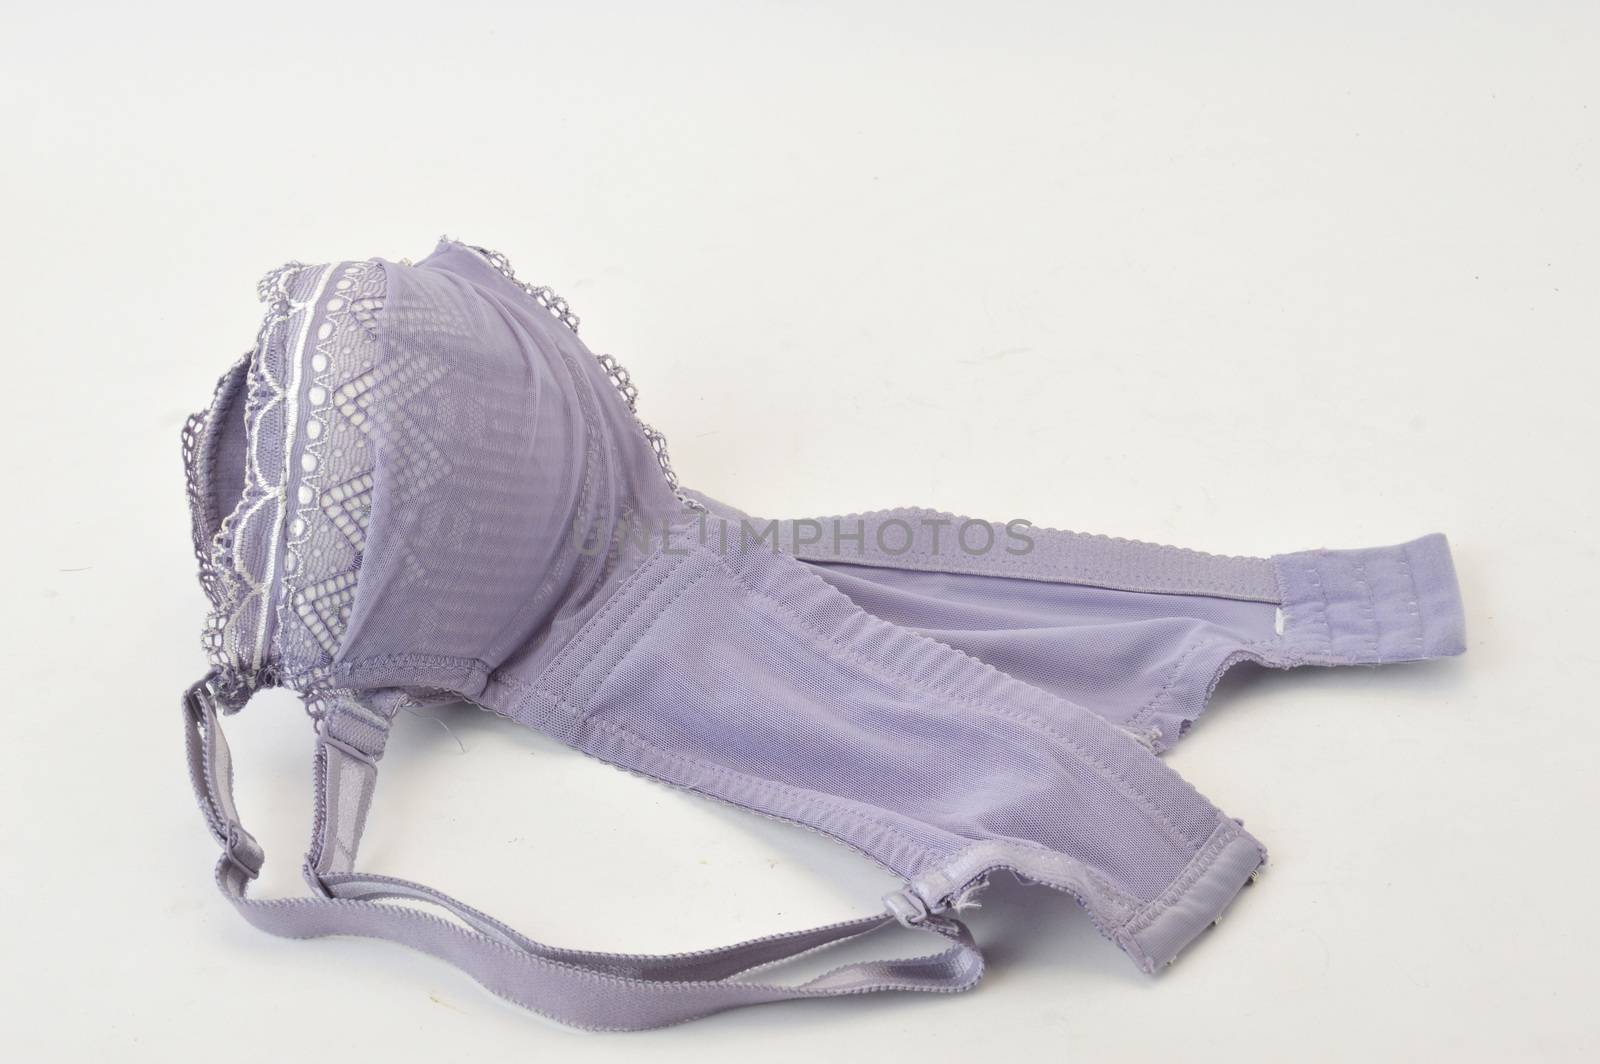 purple bra on white background